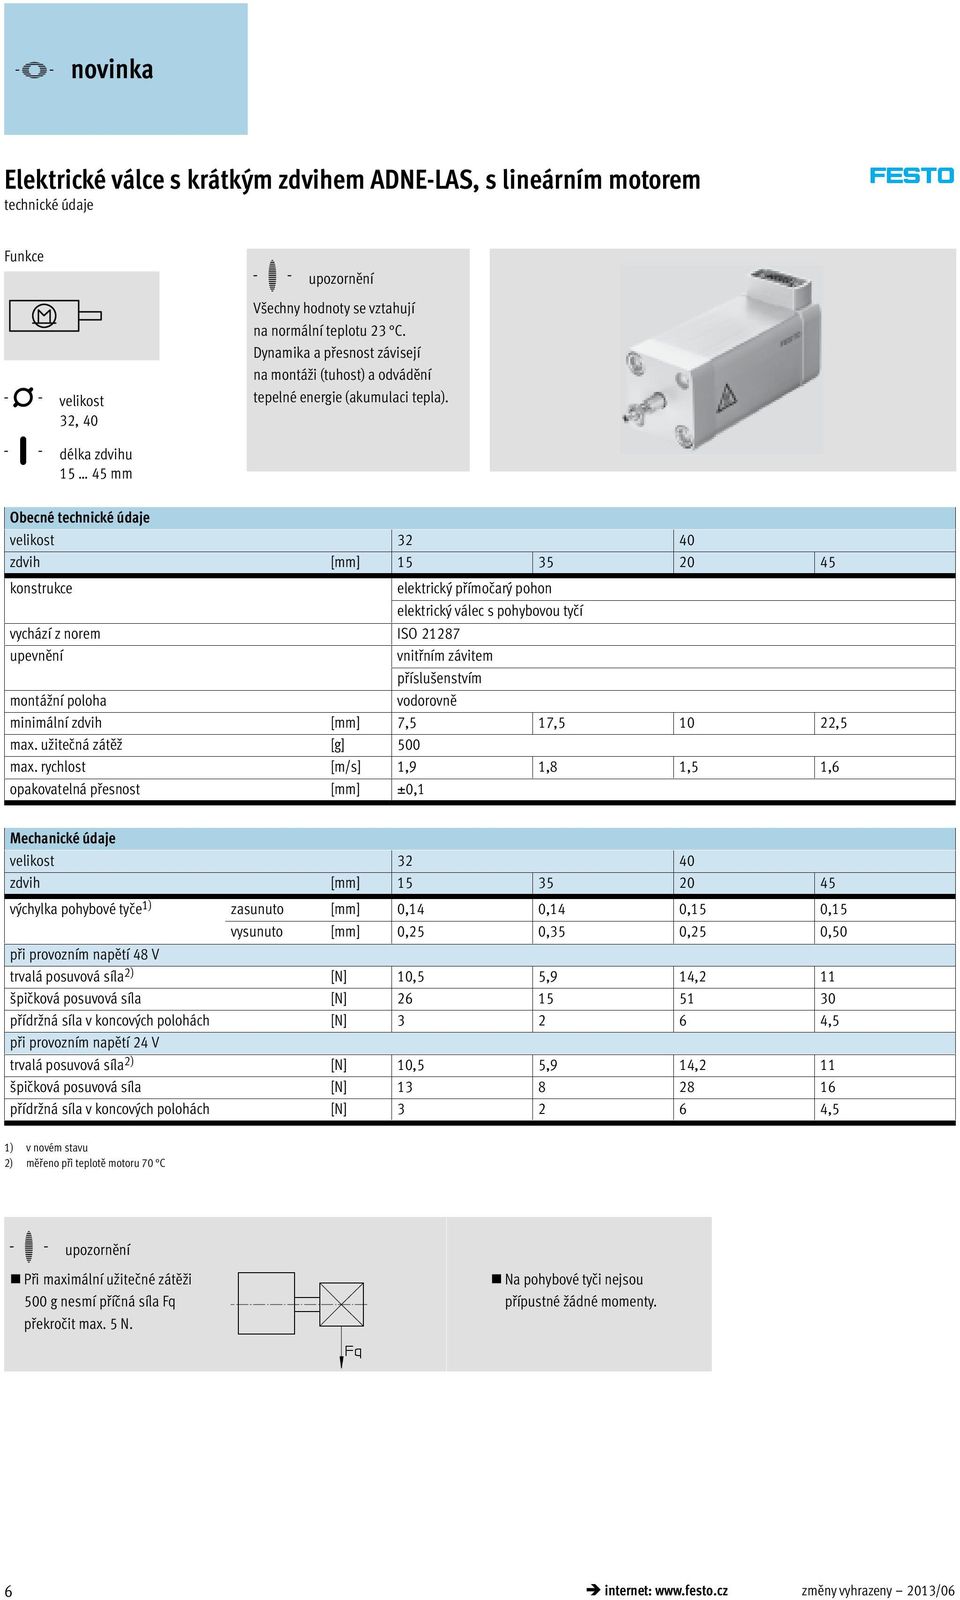 Obecné technické údaje 32 40 zdvih [mm] 15 35 20 45 konstrukce elektrický přímočarý pohon elektrický válec s pohybovou tyčí vychází z norem ISO 21287 upevnění vnitřním závitem příslušenstvím montážní